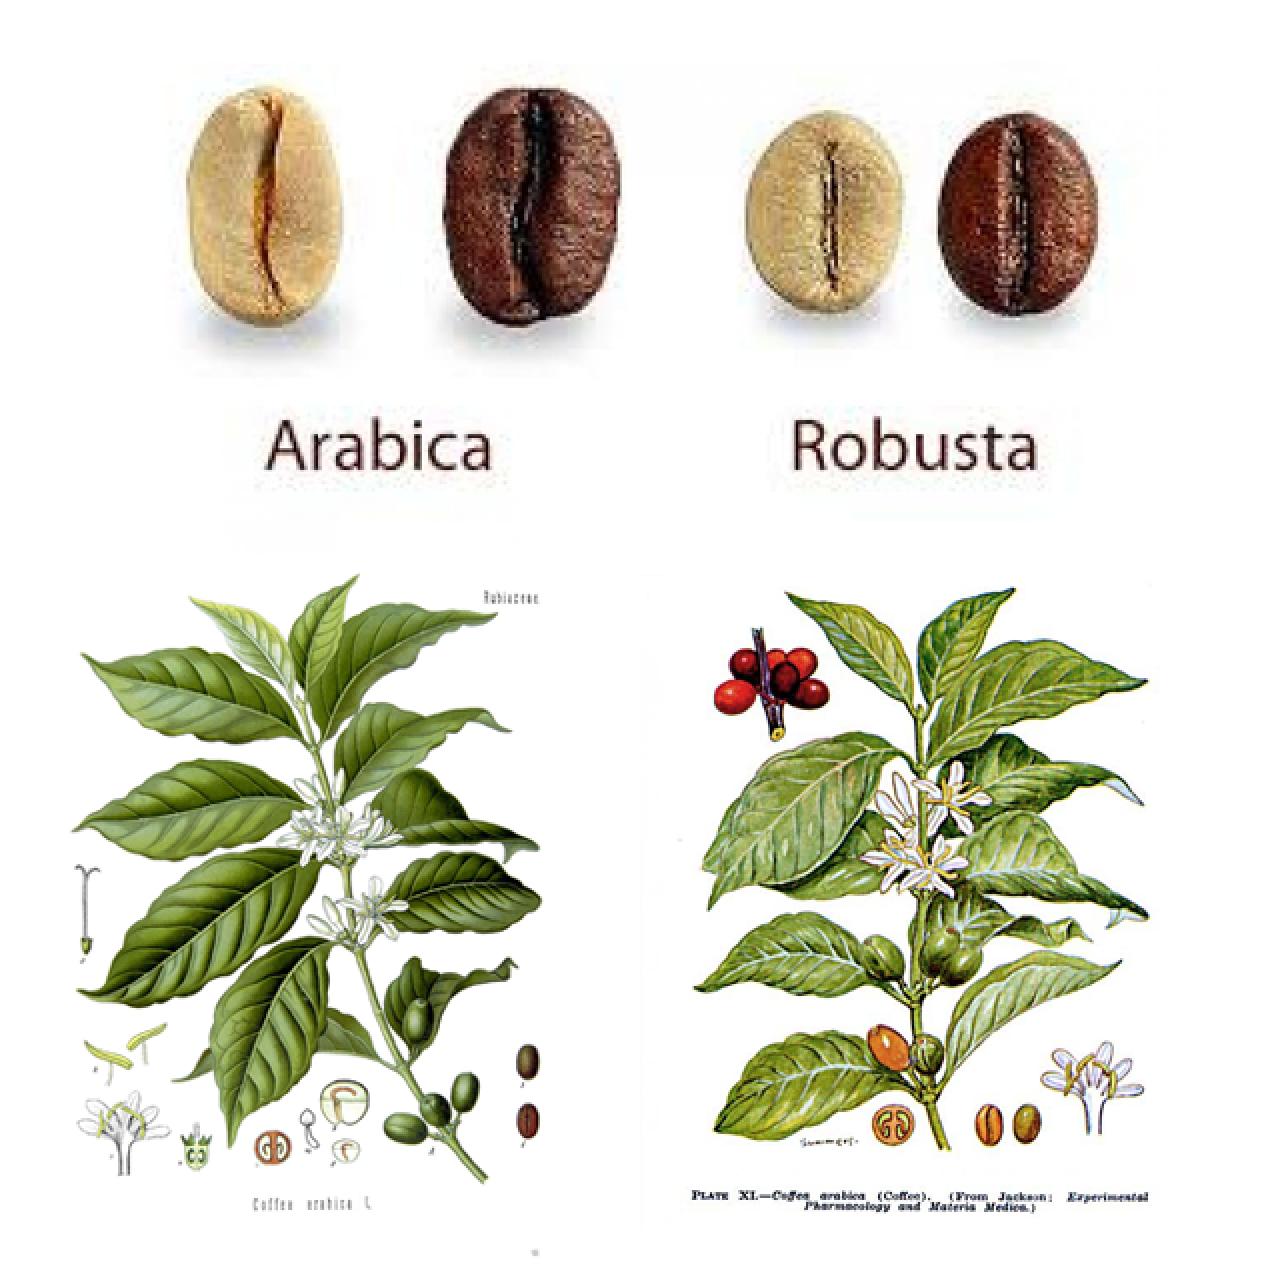 arabica versus robusta